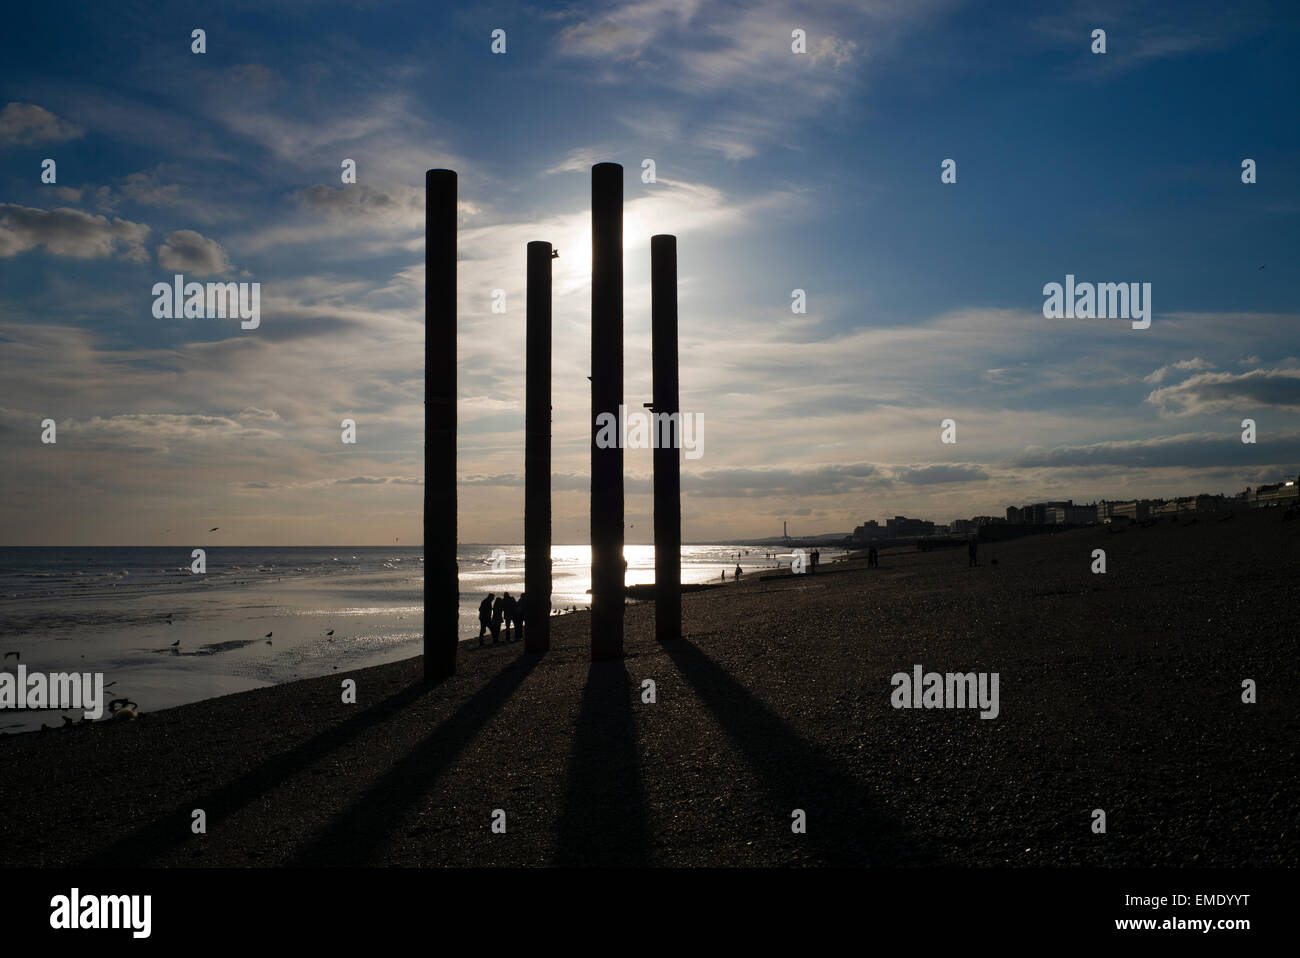 Menschen am Strand, alte Pier stützen, Sonnenuntergang, Ebbe, Strand von Brighton, UK Stockfoto